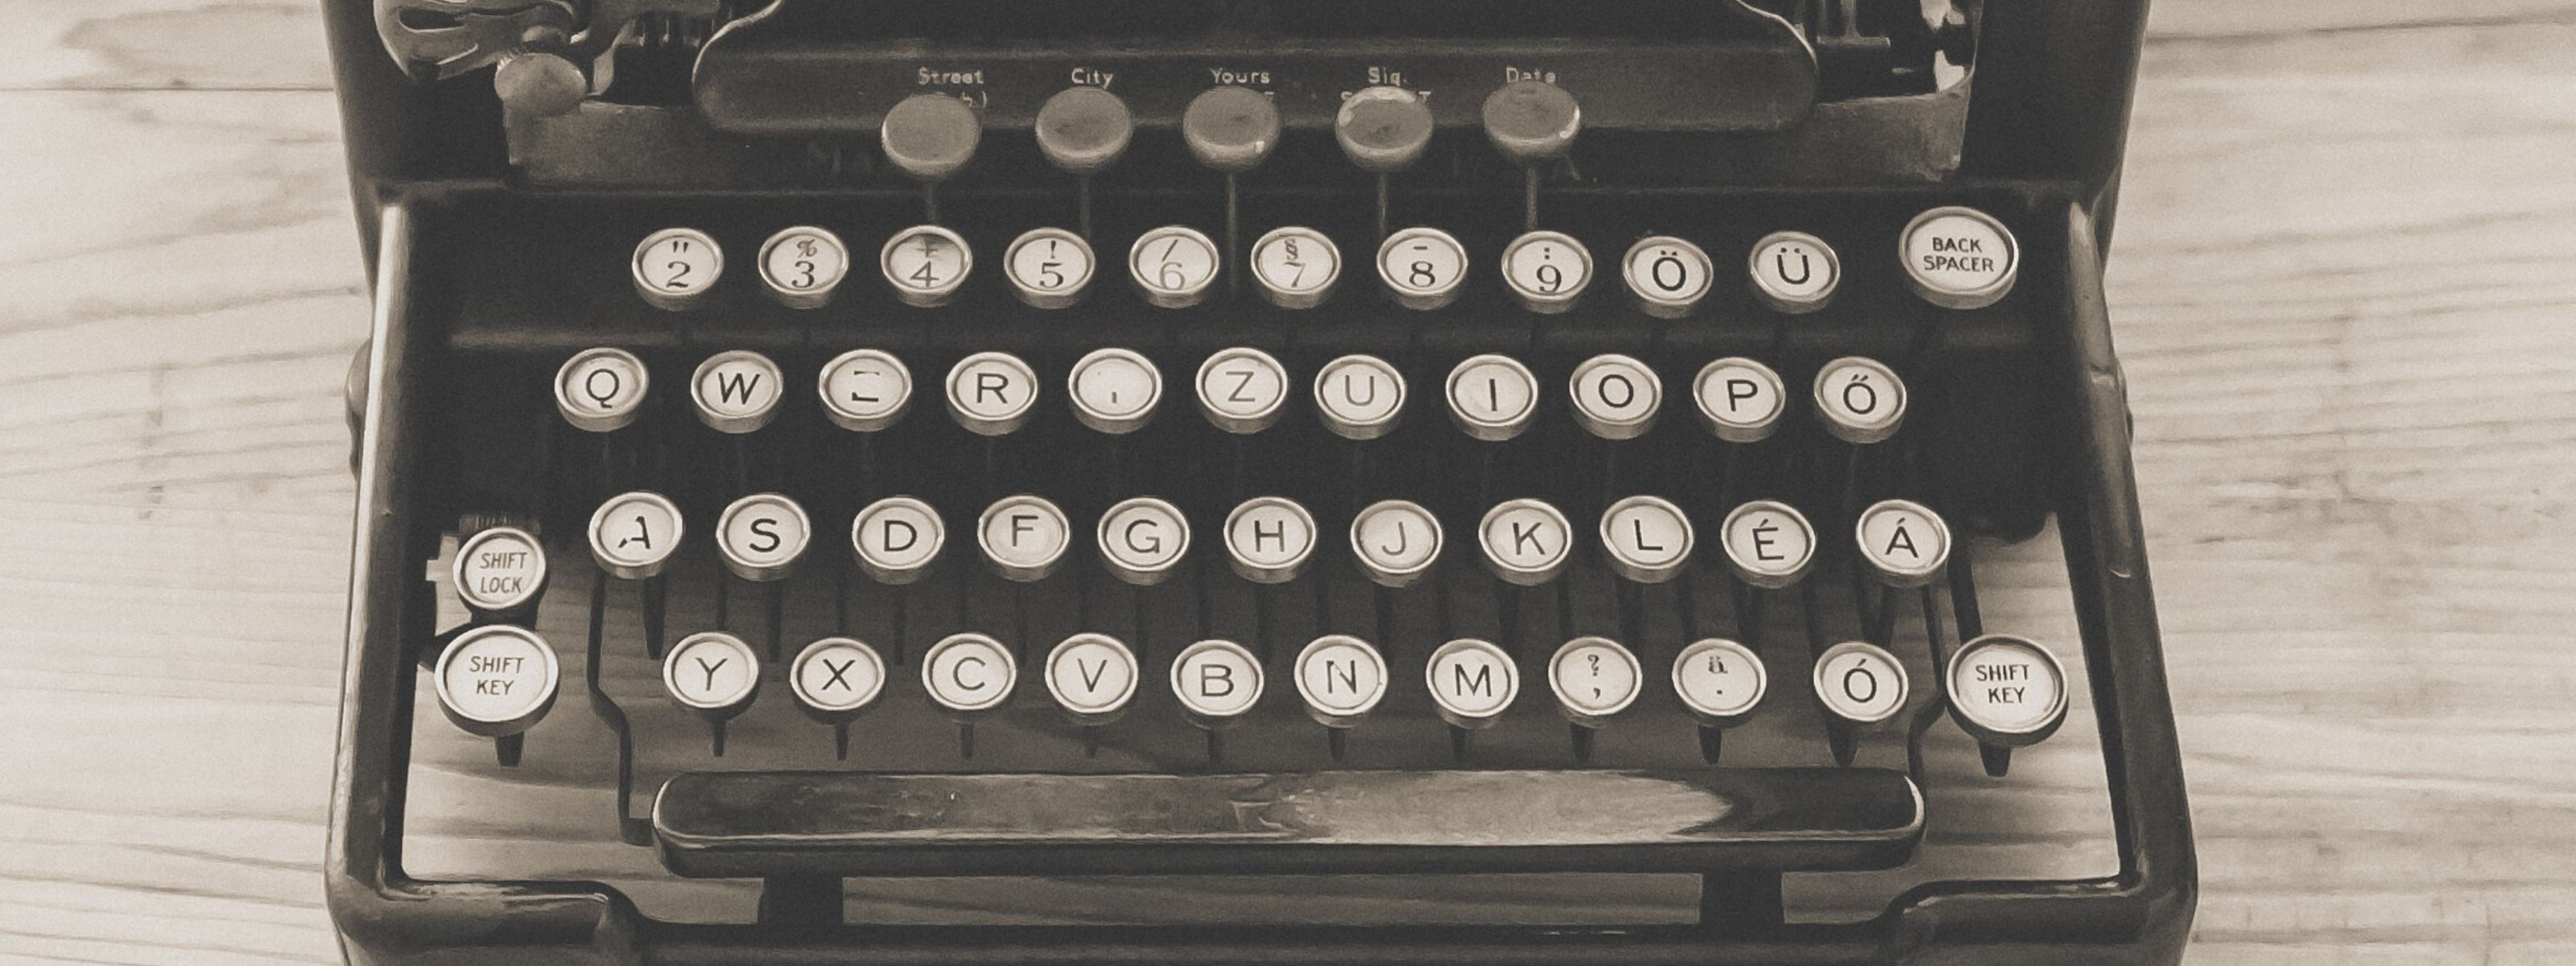 Klawiatura zabytkowej maszyny do pisania - narzędzie komunikacyjne.